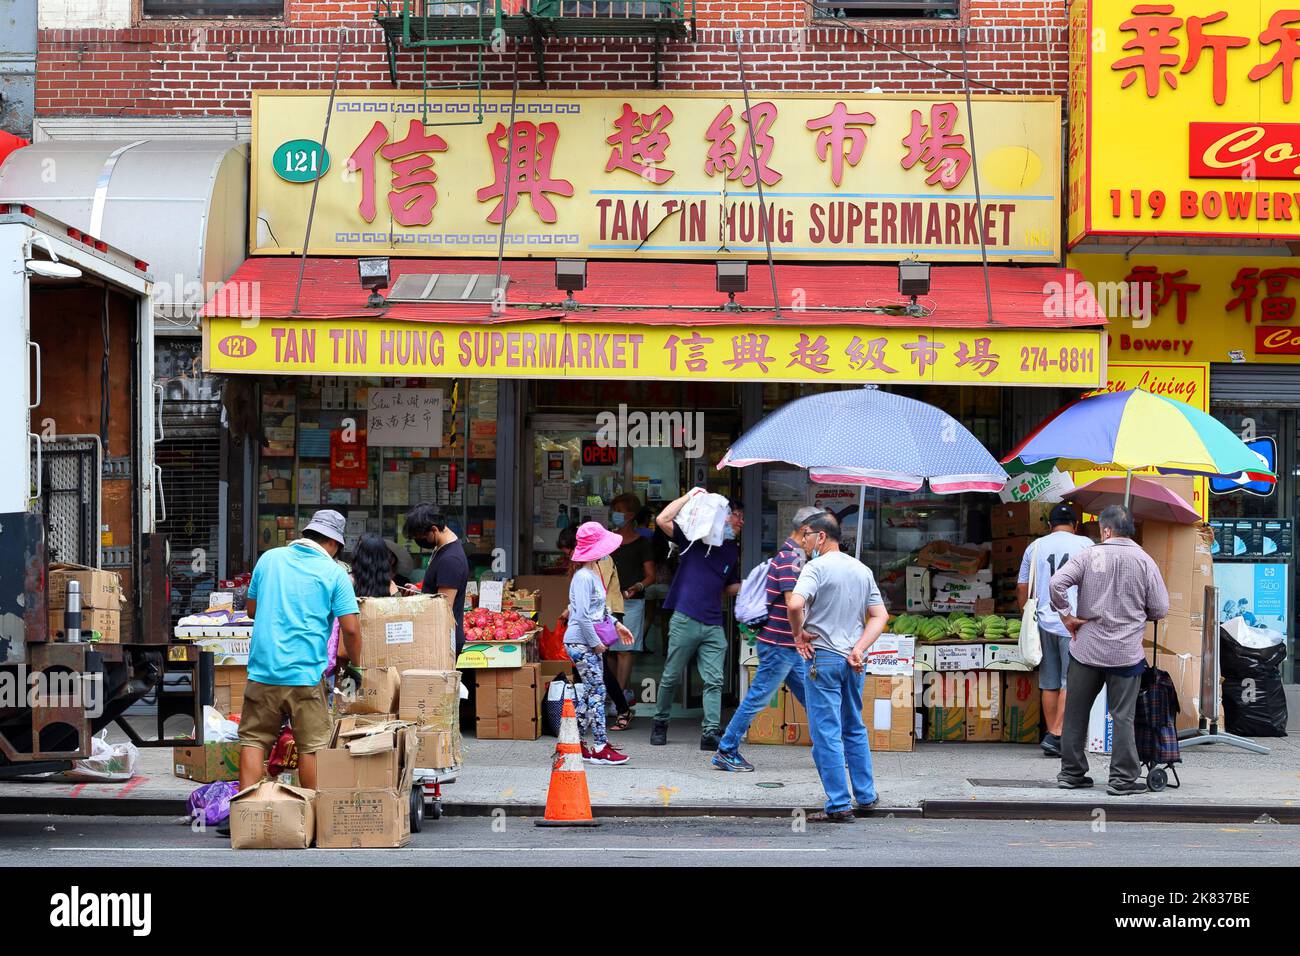 Tan Tin Hung Supermarket 信興超級市場, 121 Bowery, New York, foto di un negozio di alimentari del sud-est asiatico a Manhattan Chinatown. Foto Stock